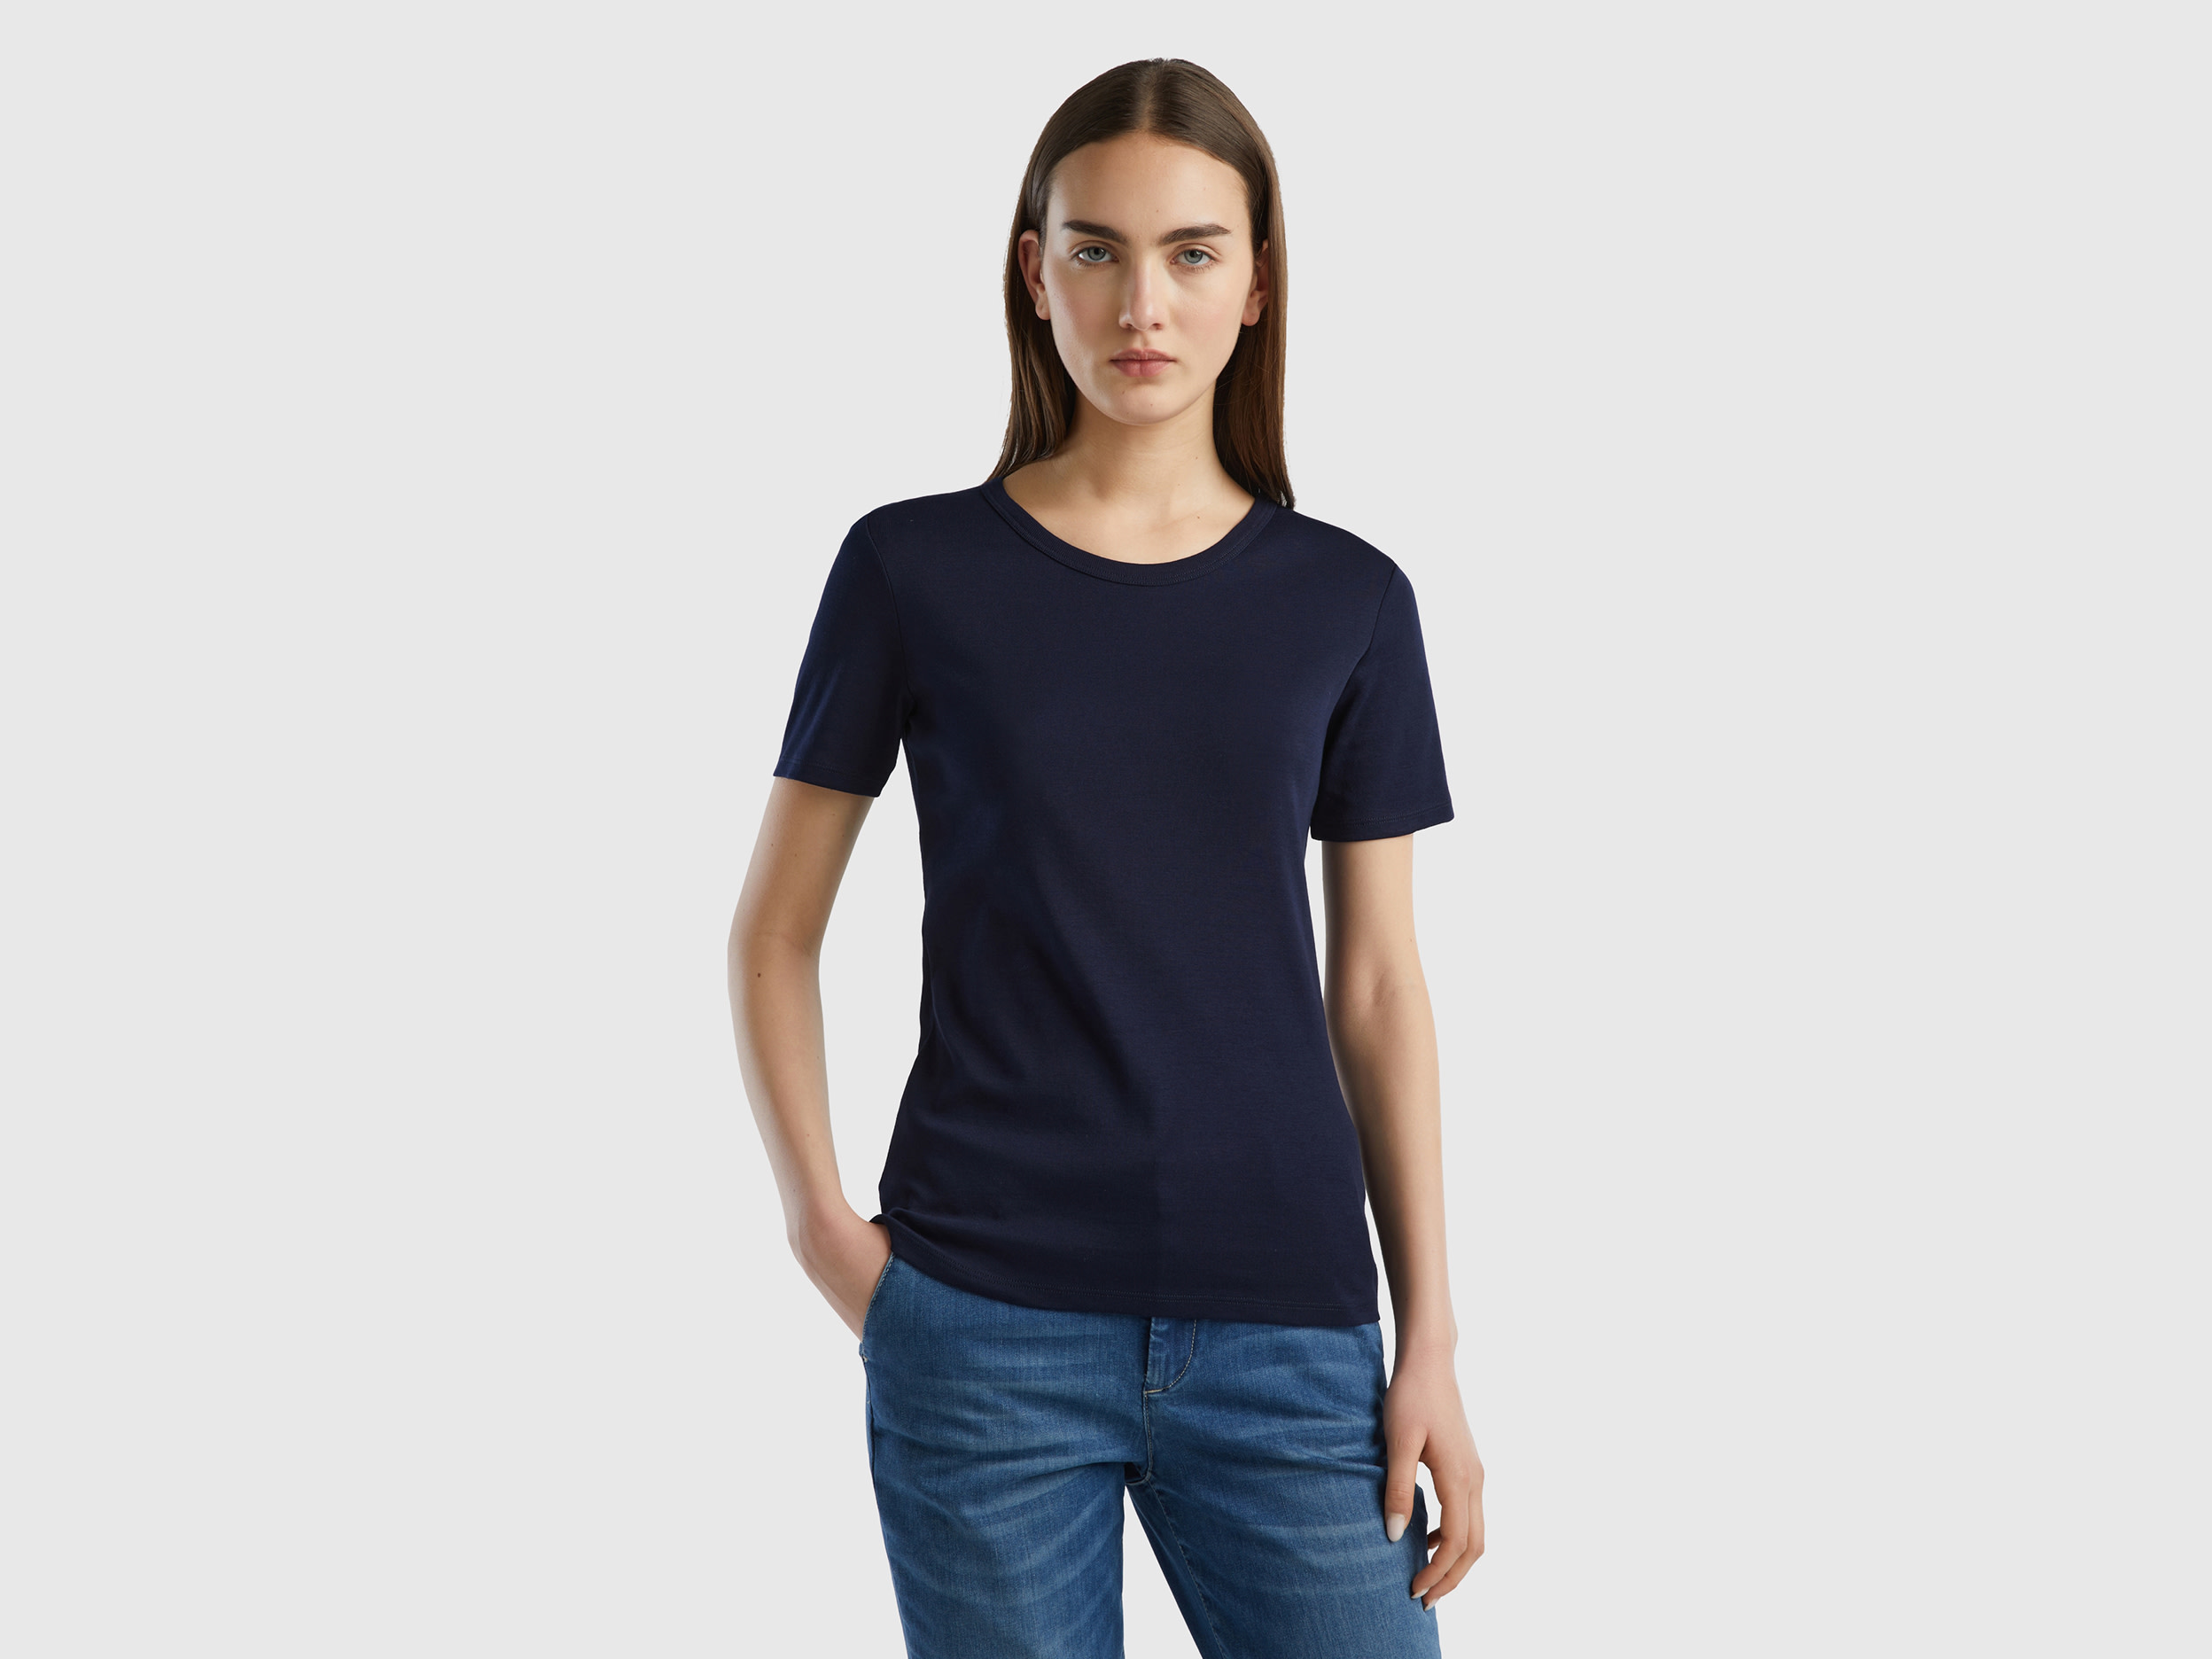 Benetton, Long Fiber Cotton T-shirt, size XS, Dark Blue, Women